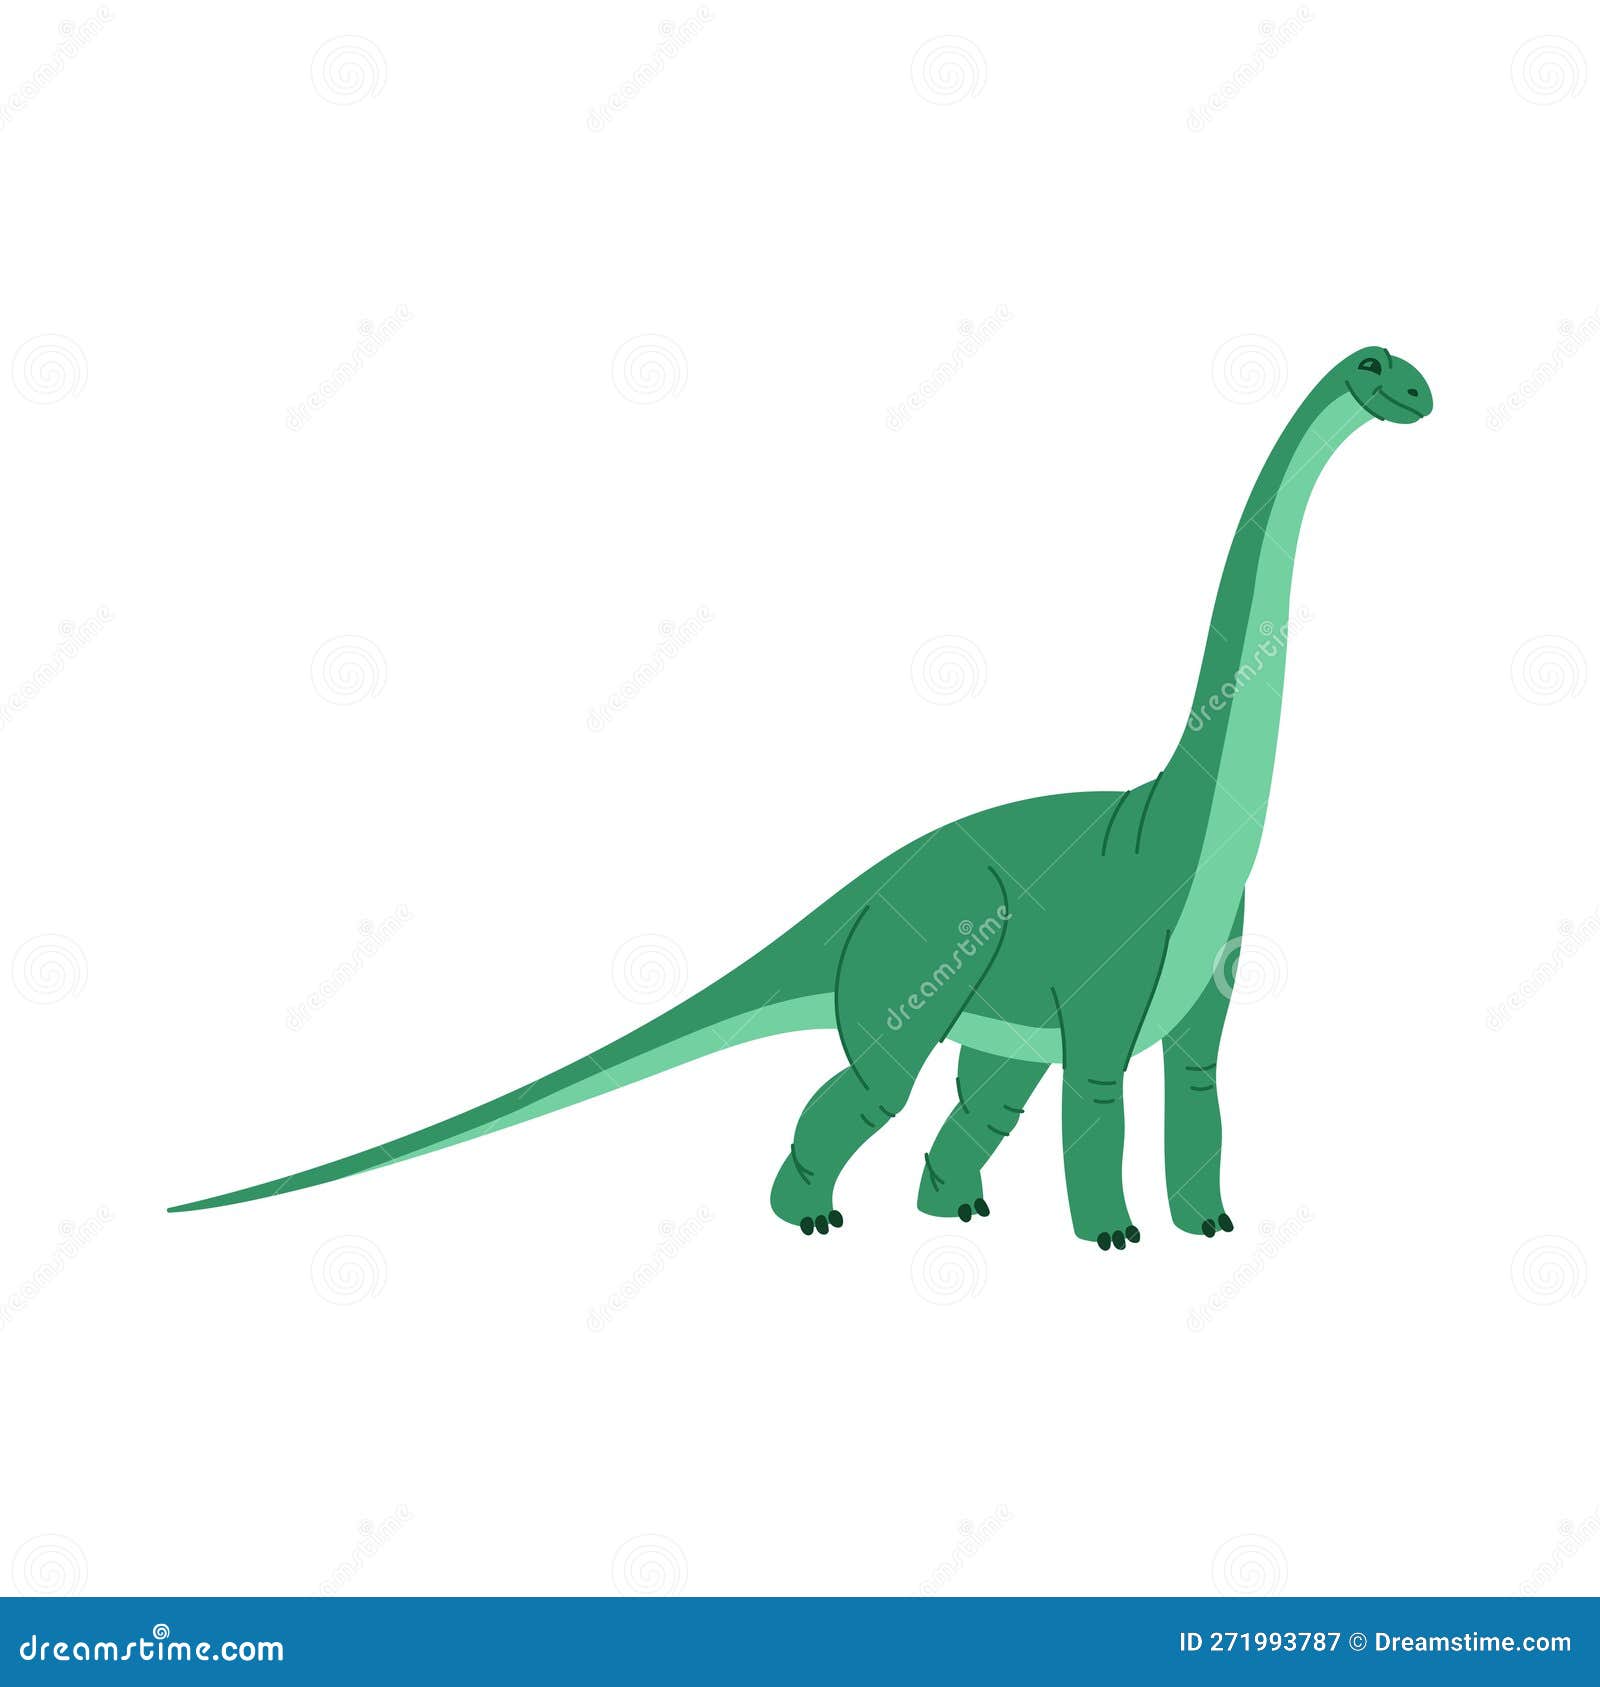 lindo dinossauro verde desenhado em estilo infantil com elementos  decorativos. brontossauro, diplodoco, braquiossauro para imprimir em coisas  infantis. estilo de desenho vetorial moderno 14755591 Vetor no Vecteezy